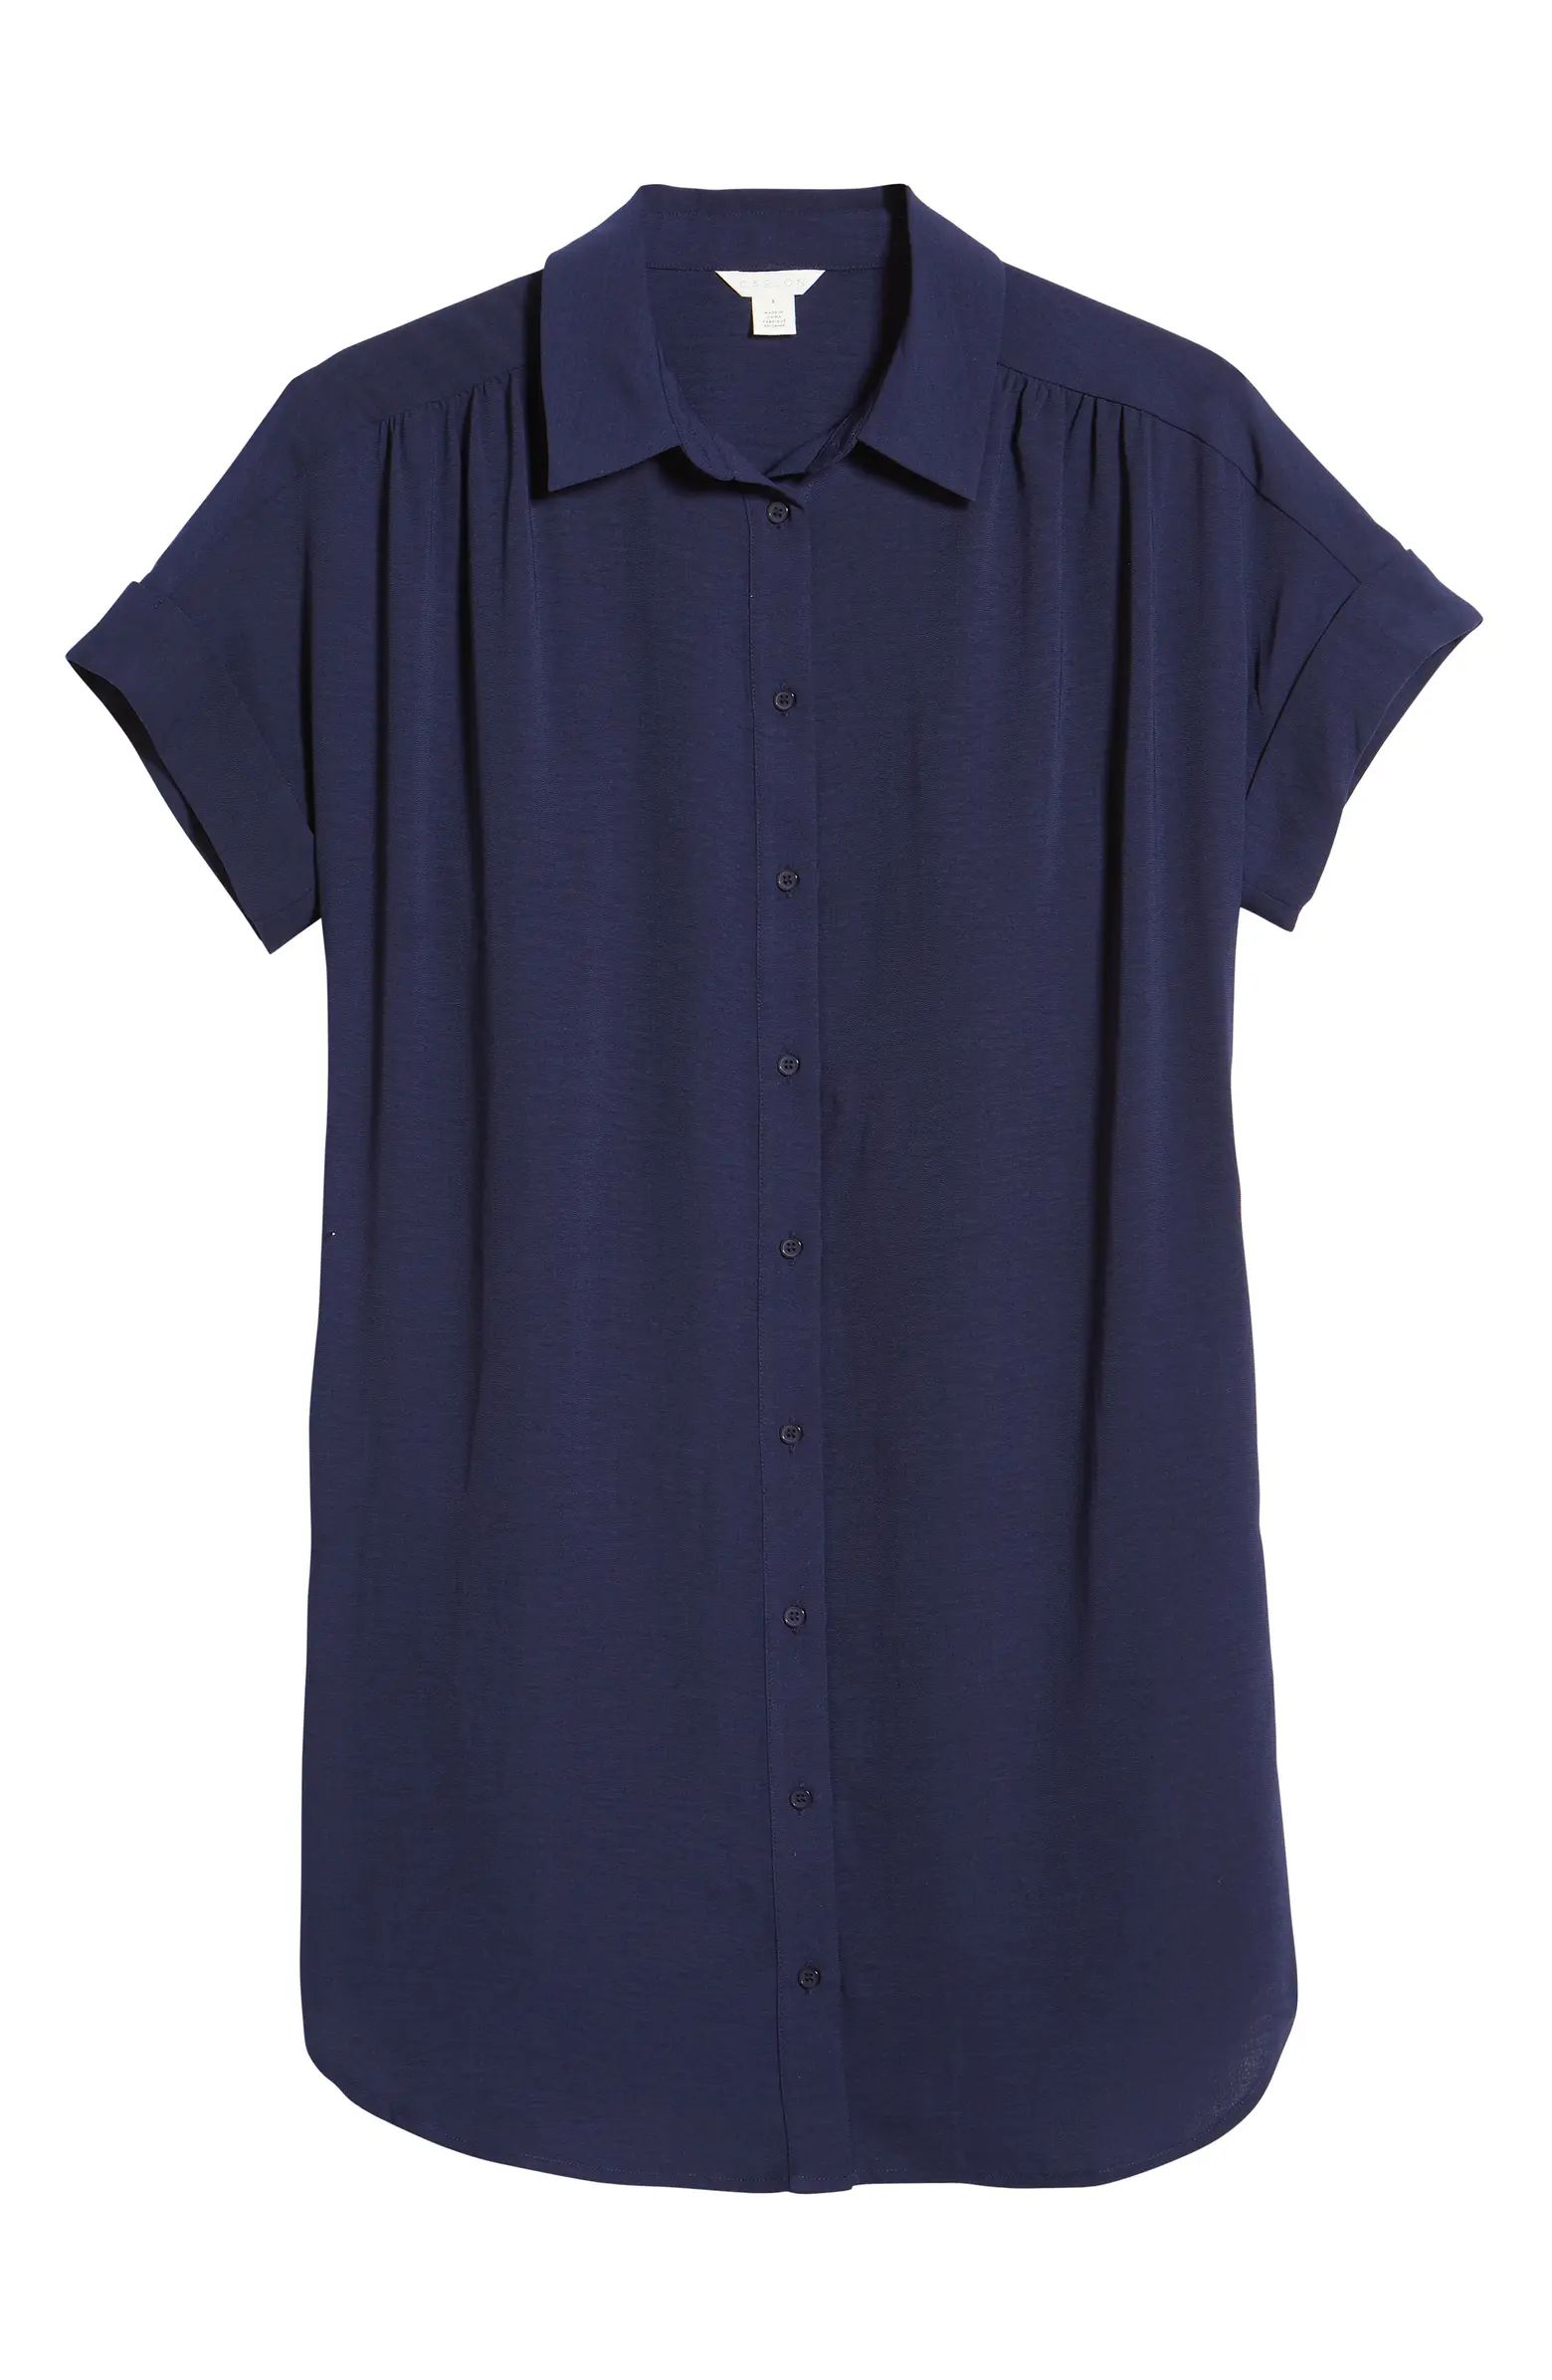 Caslon® Short Sleeve Shirtdress | Nordstrom | Nordstrom